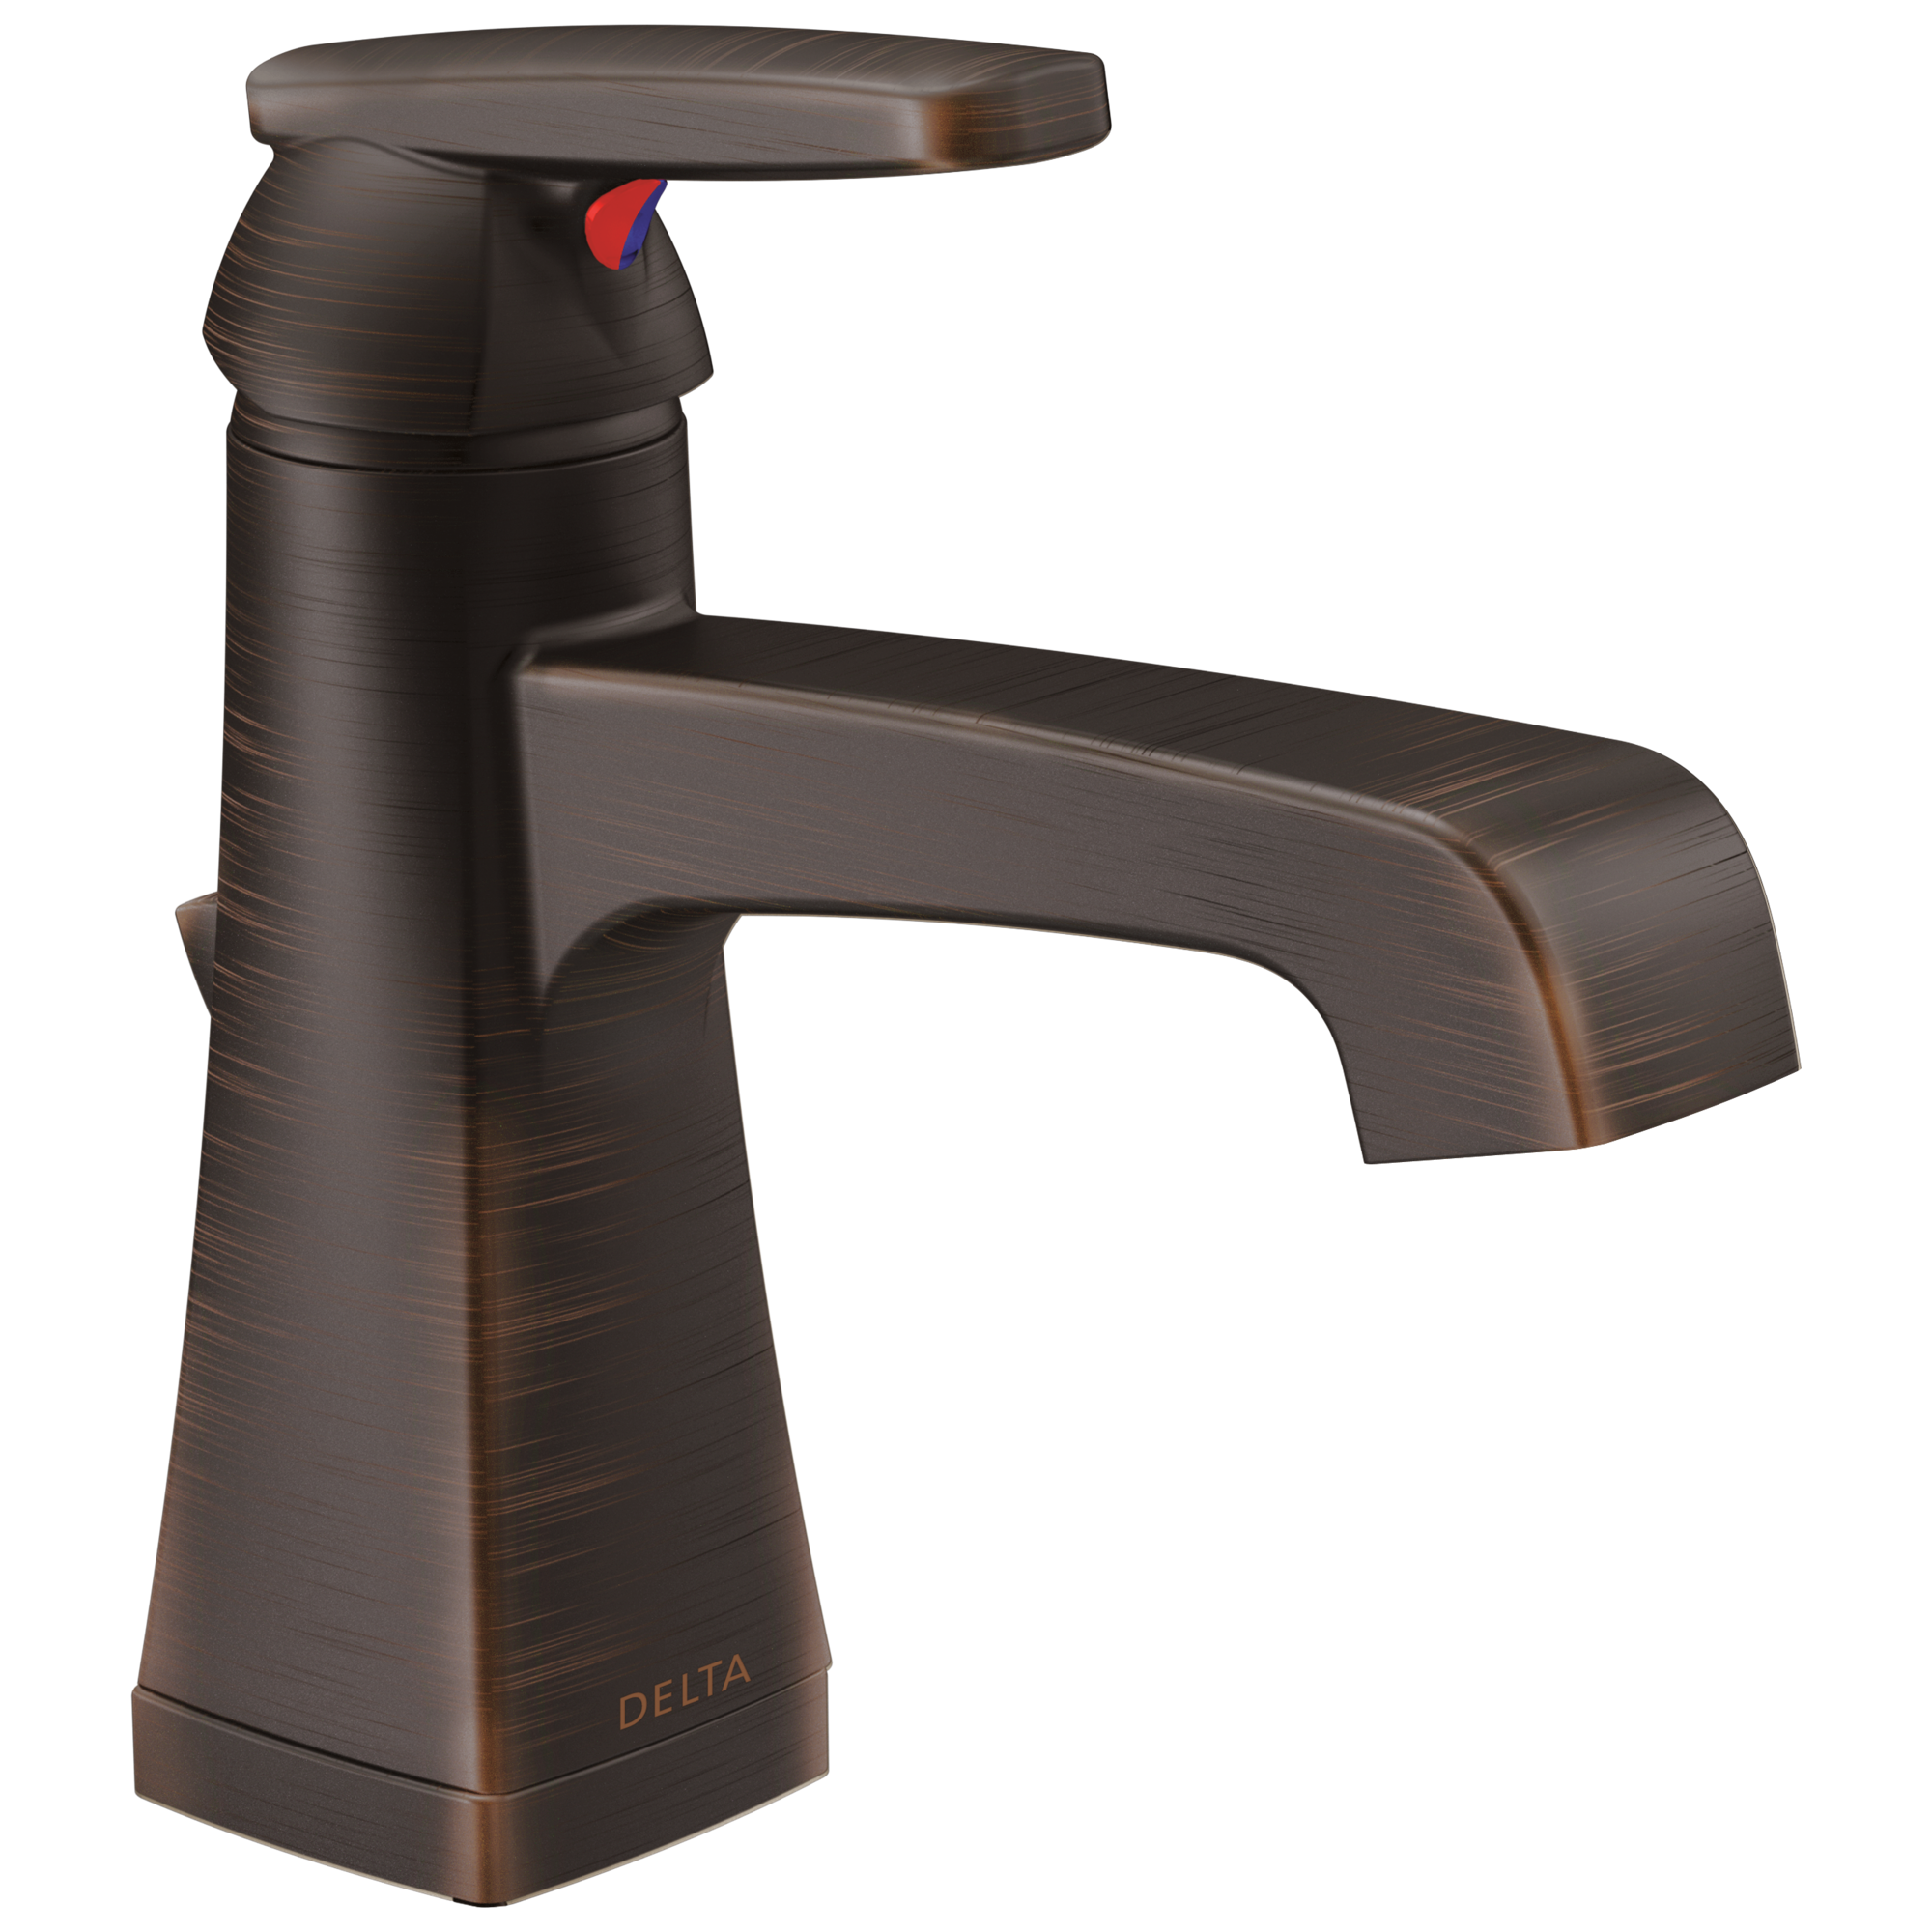 Delta 564 Single Handle Bathroom Faucet